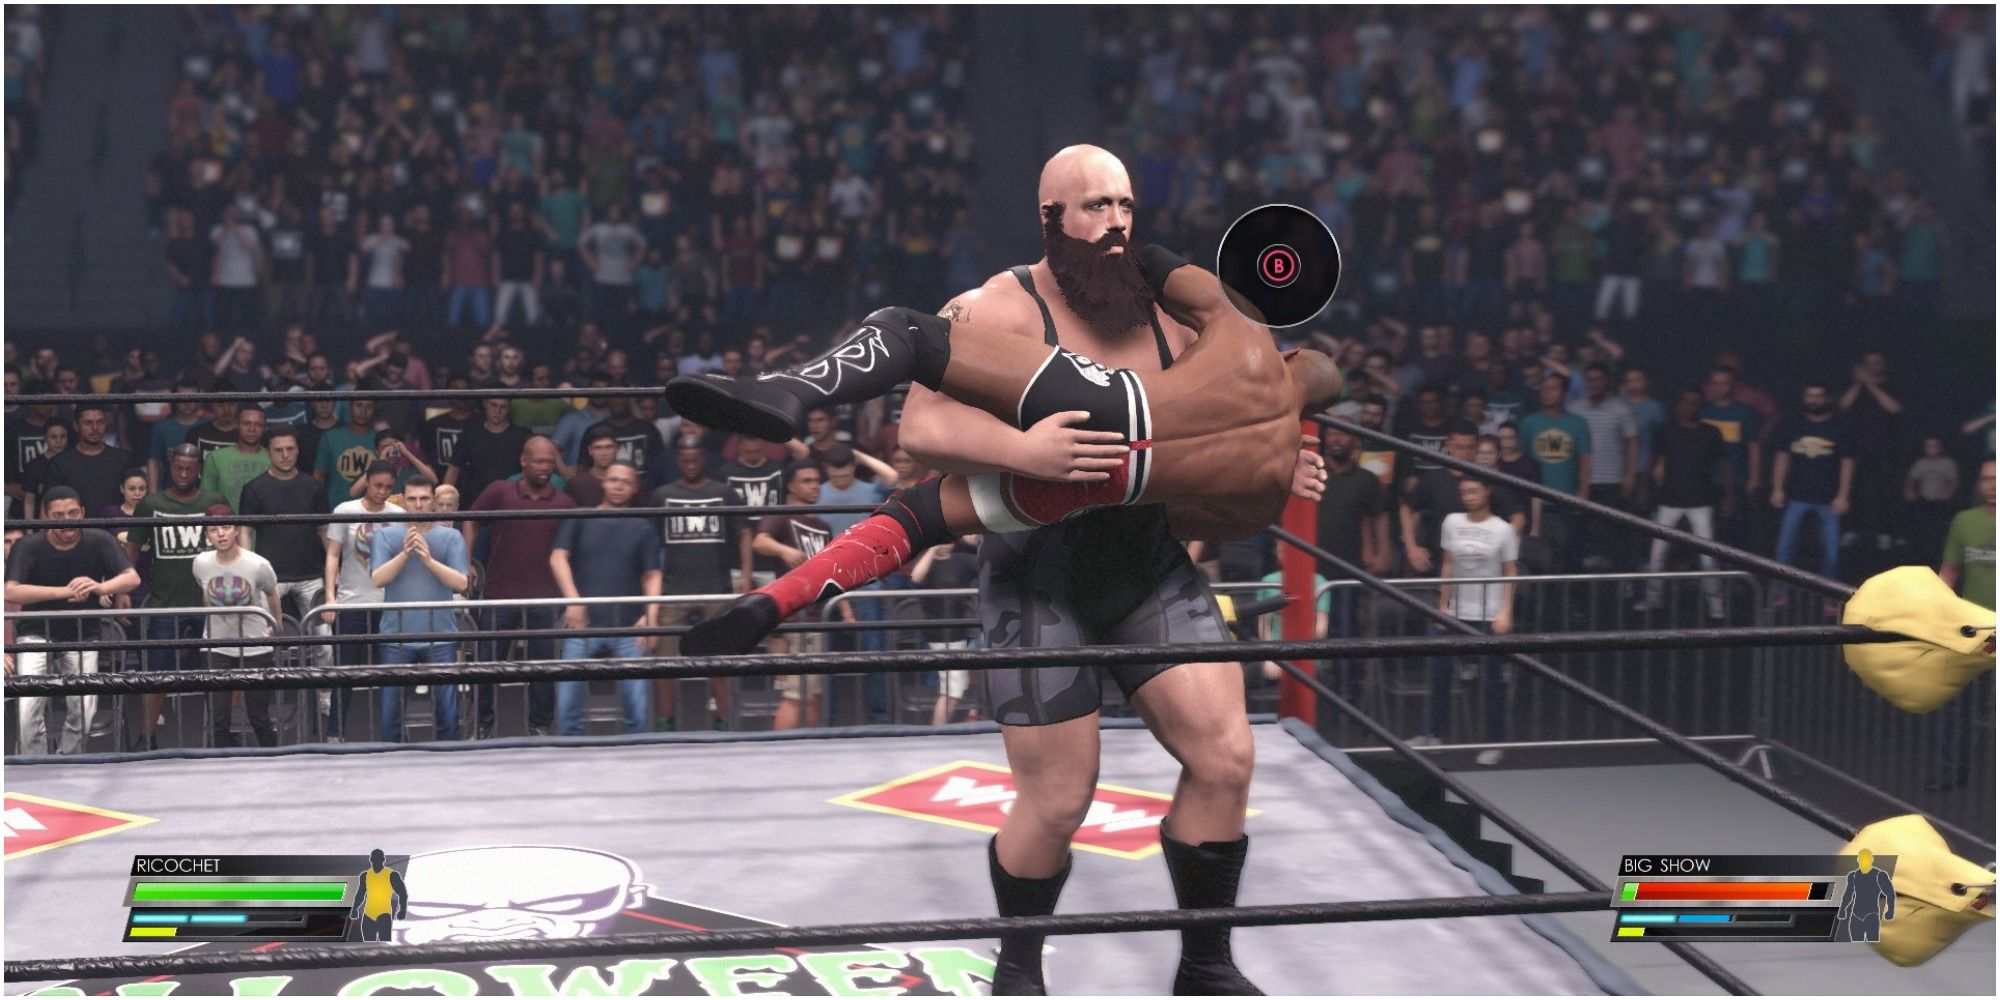 WWE 2K22 Big Show carrying Richochet